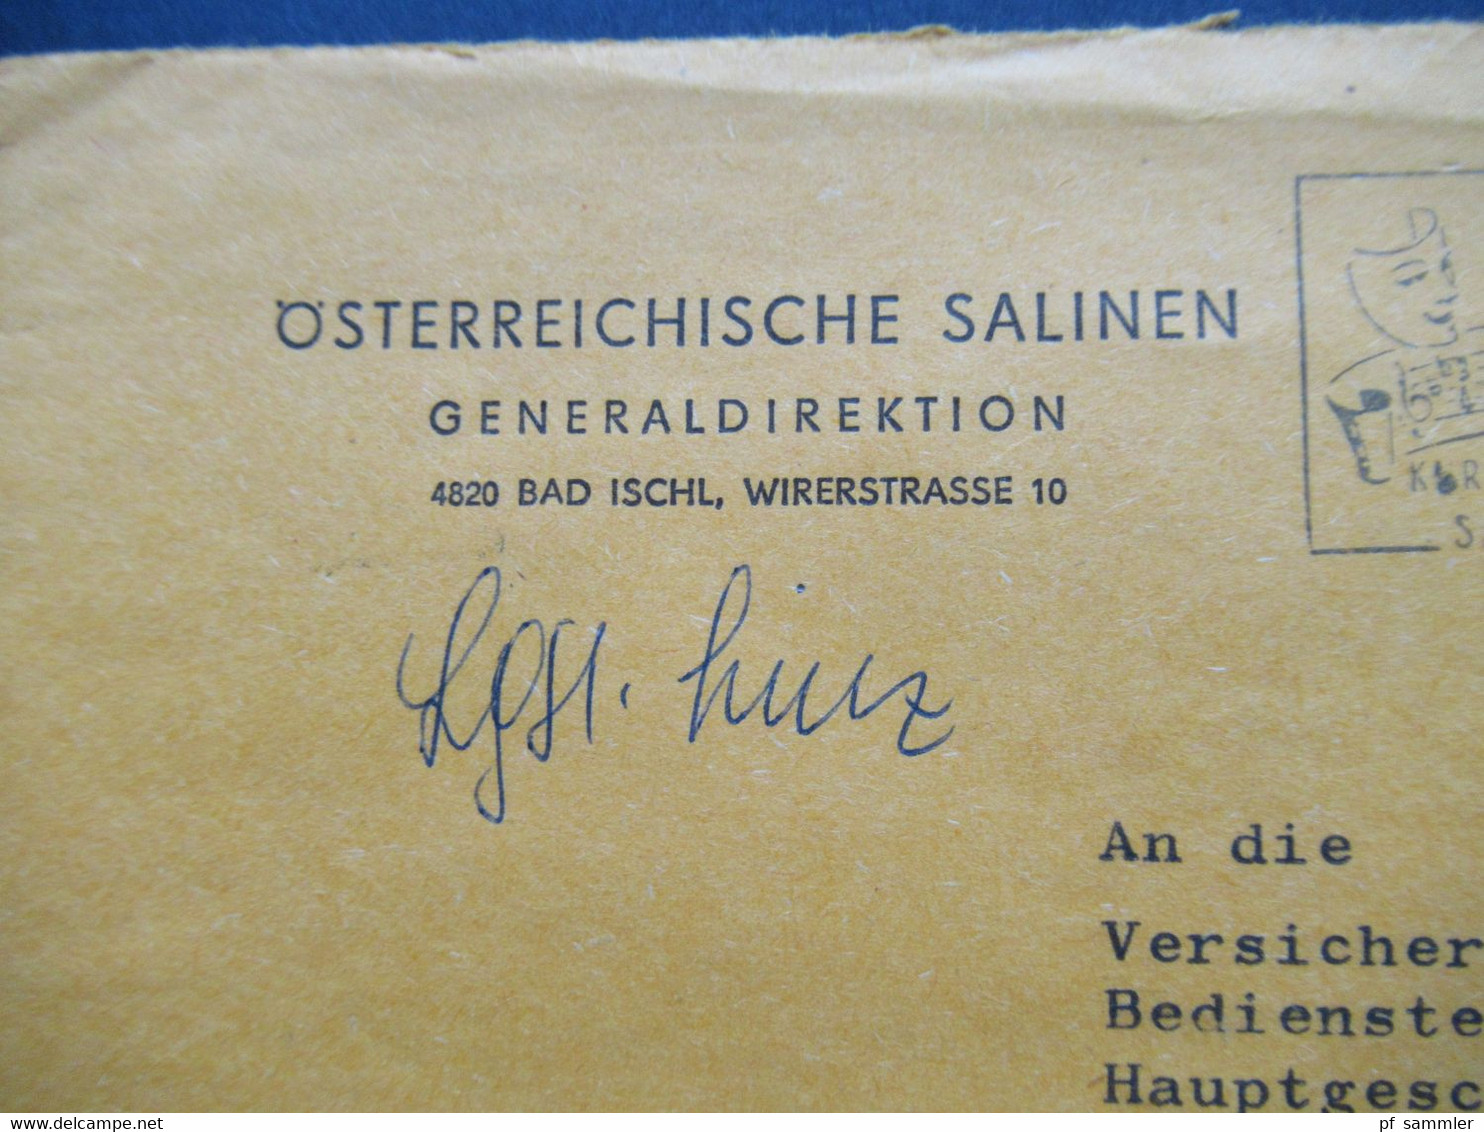 Österreich 1977 Postgebühr Bar Bezahlt Umschlag Österreichische Salinen Generaldirektion Bad Ischl Stp. Operettenwochen - Covers & Documents